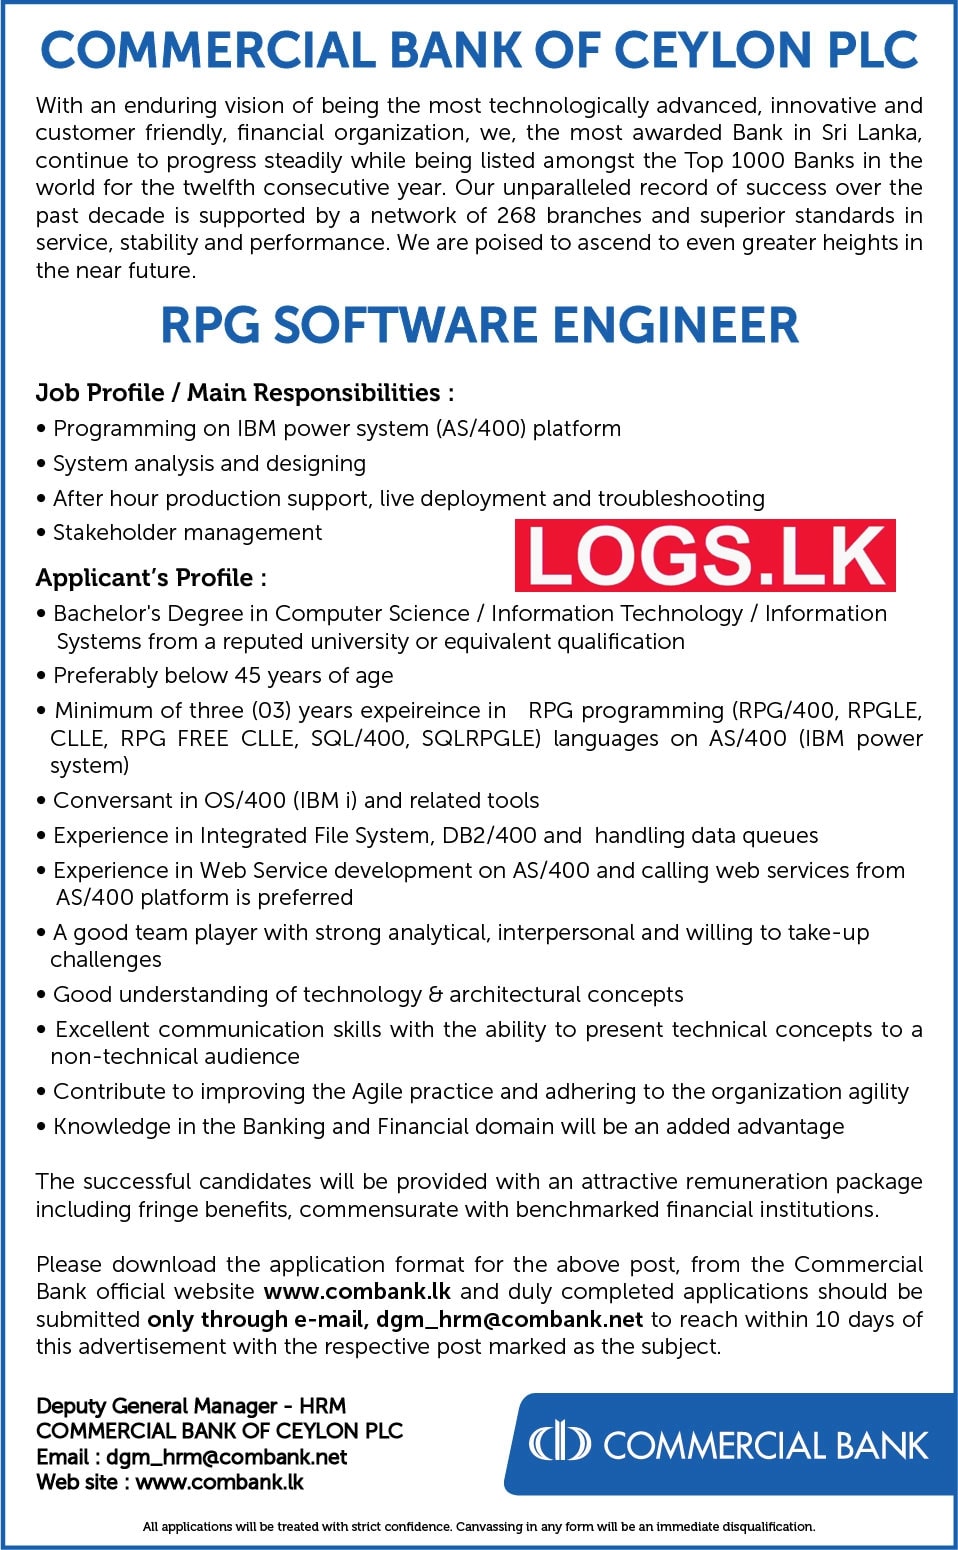 RPG Software Engineer Job Vacancy in Commercial Bank Jobs Vacancies